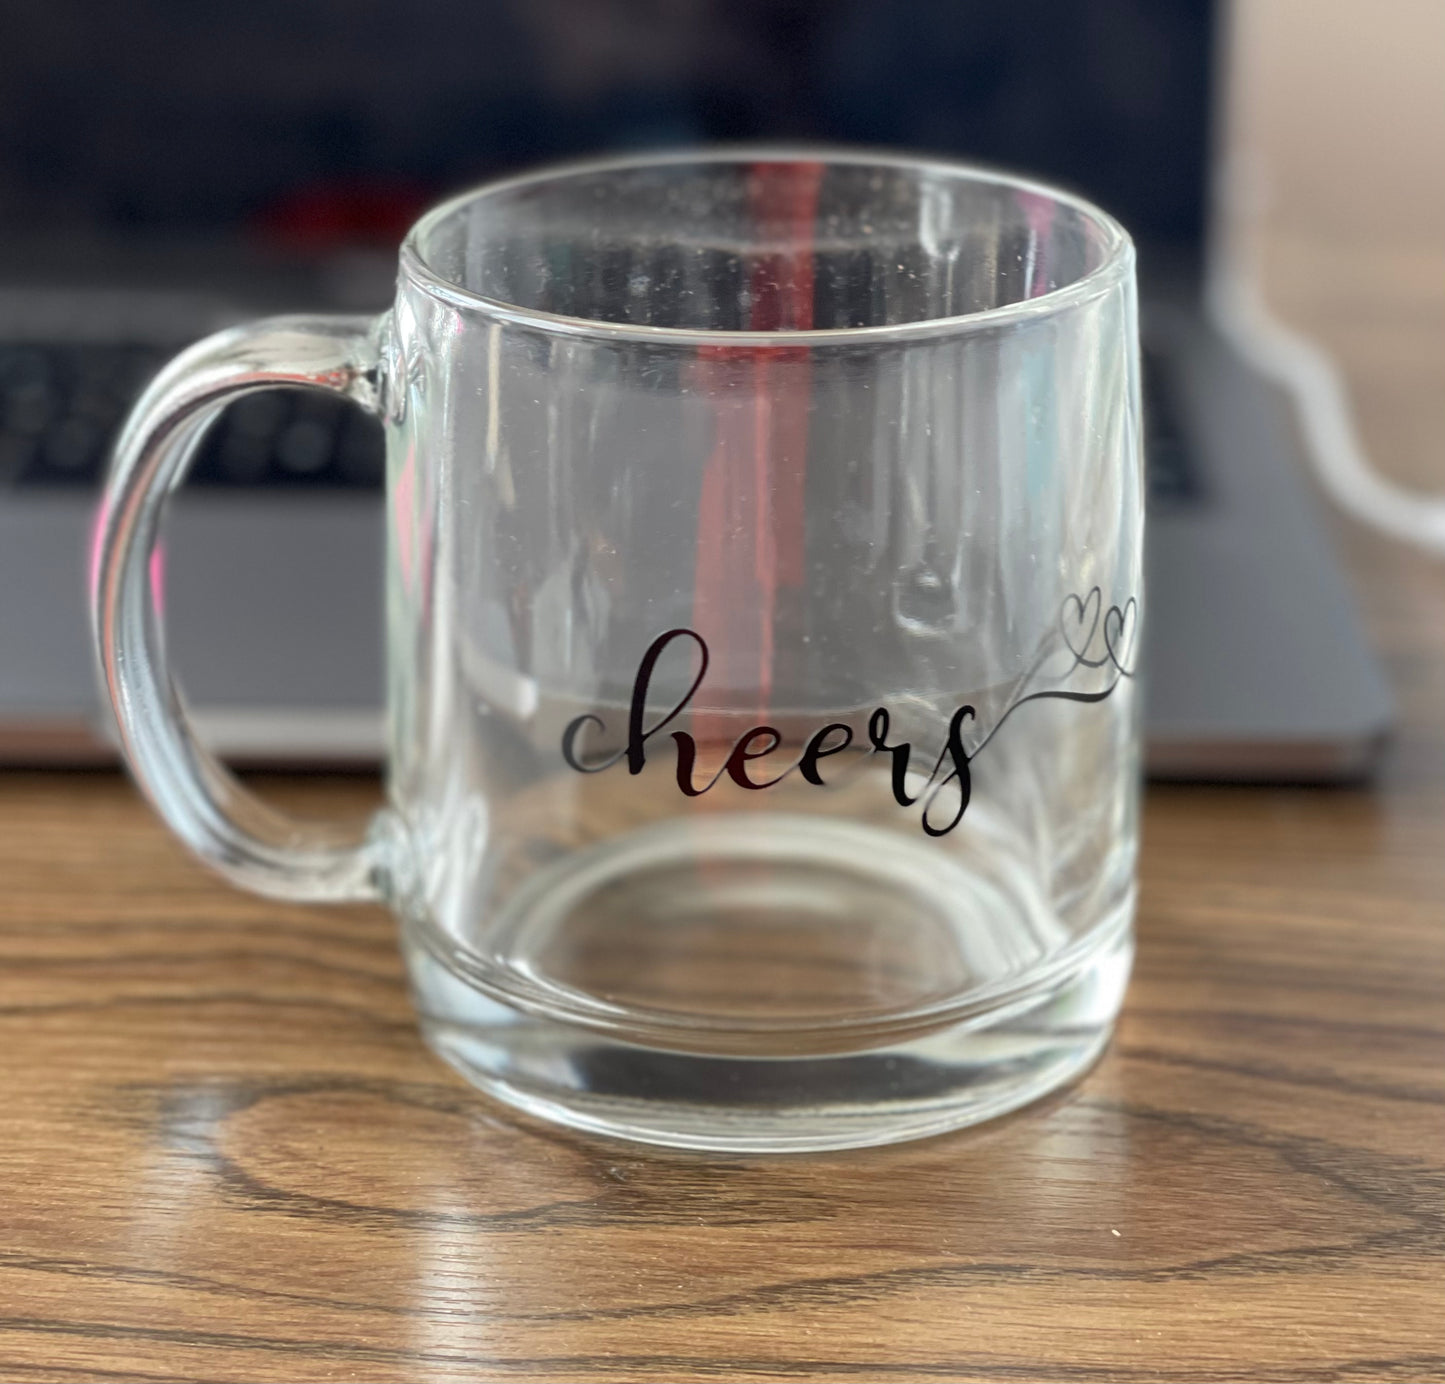 "Cheers" glass mug